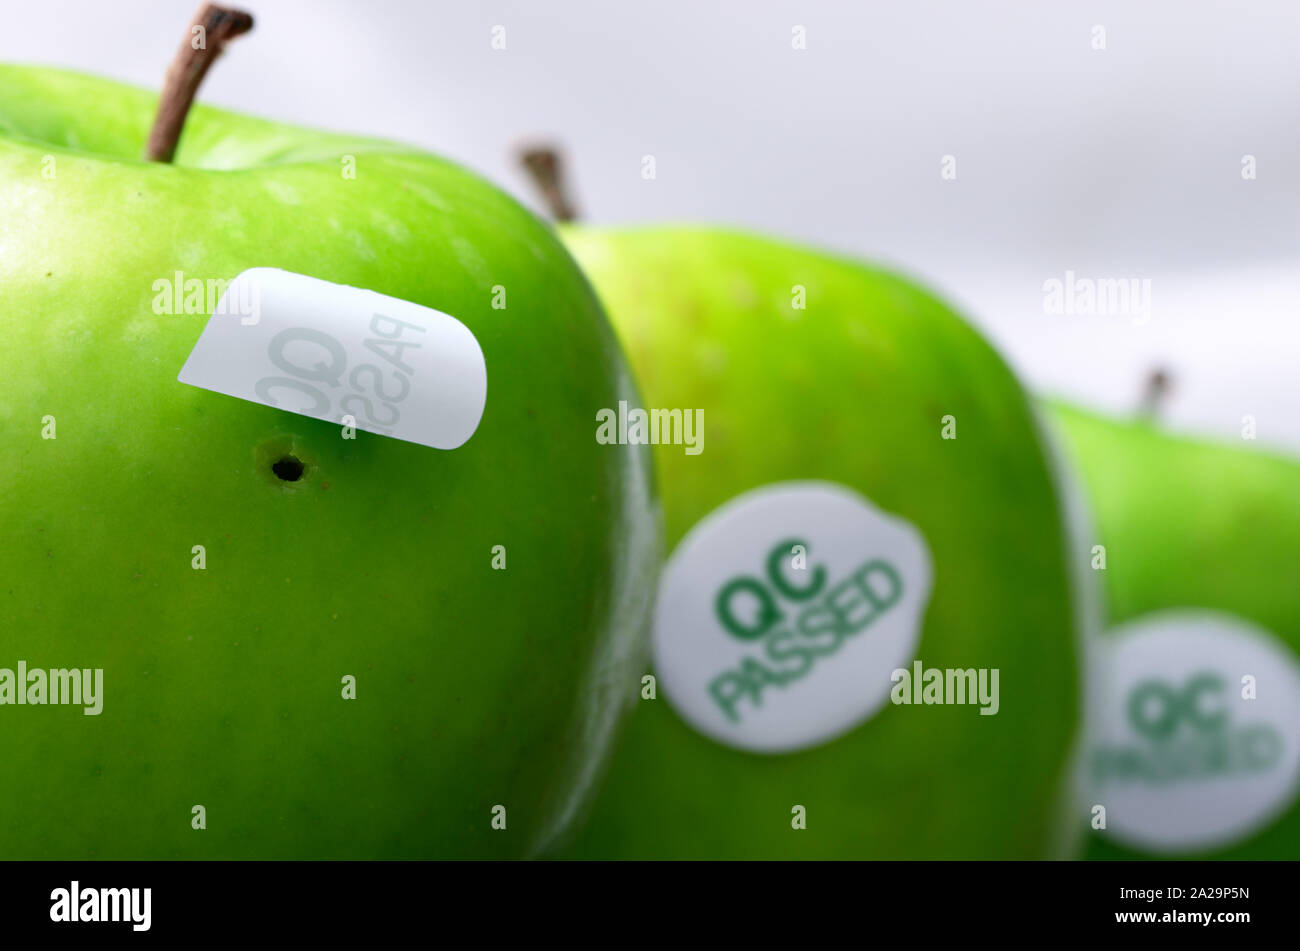 Dans le trou caché par apple QC adopté sticker, illustrant l'échec dans le contrôle de la qualité Banque D'Images